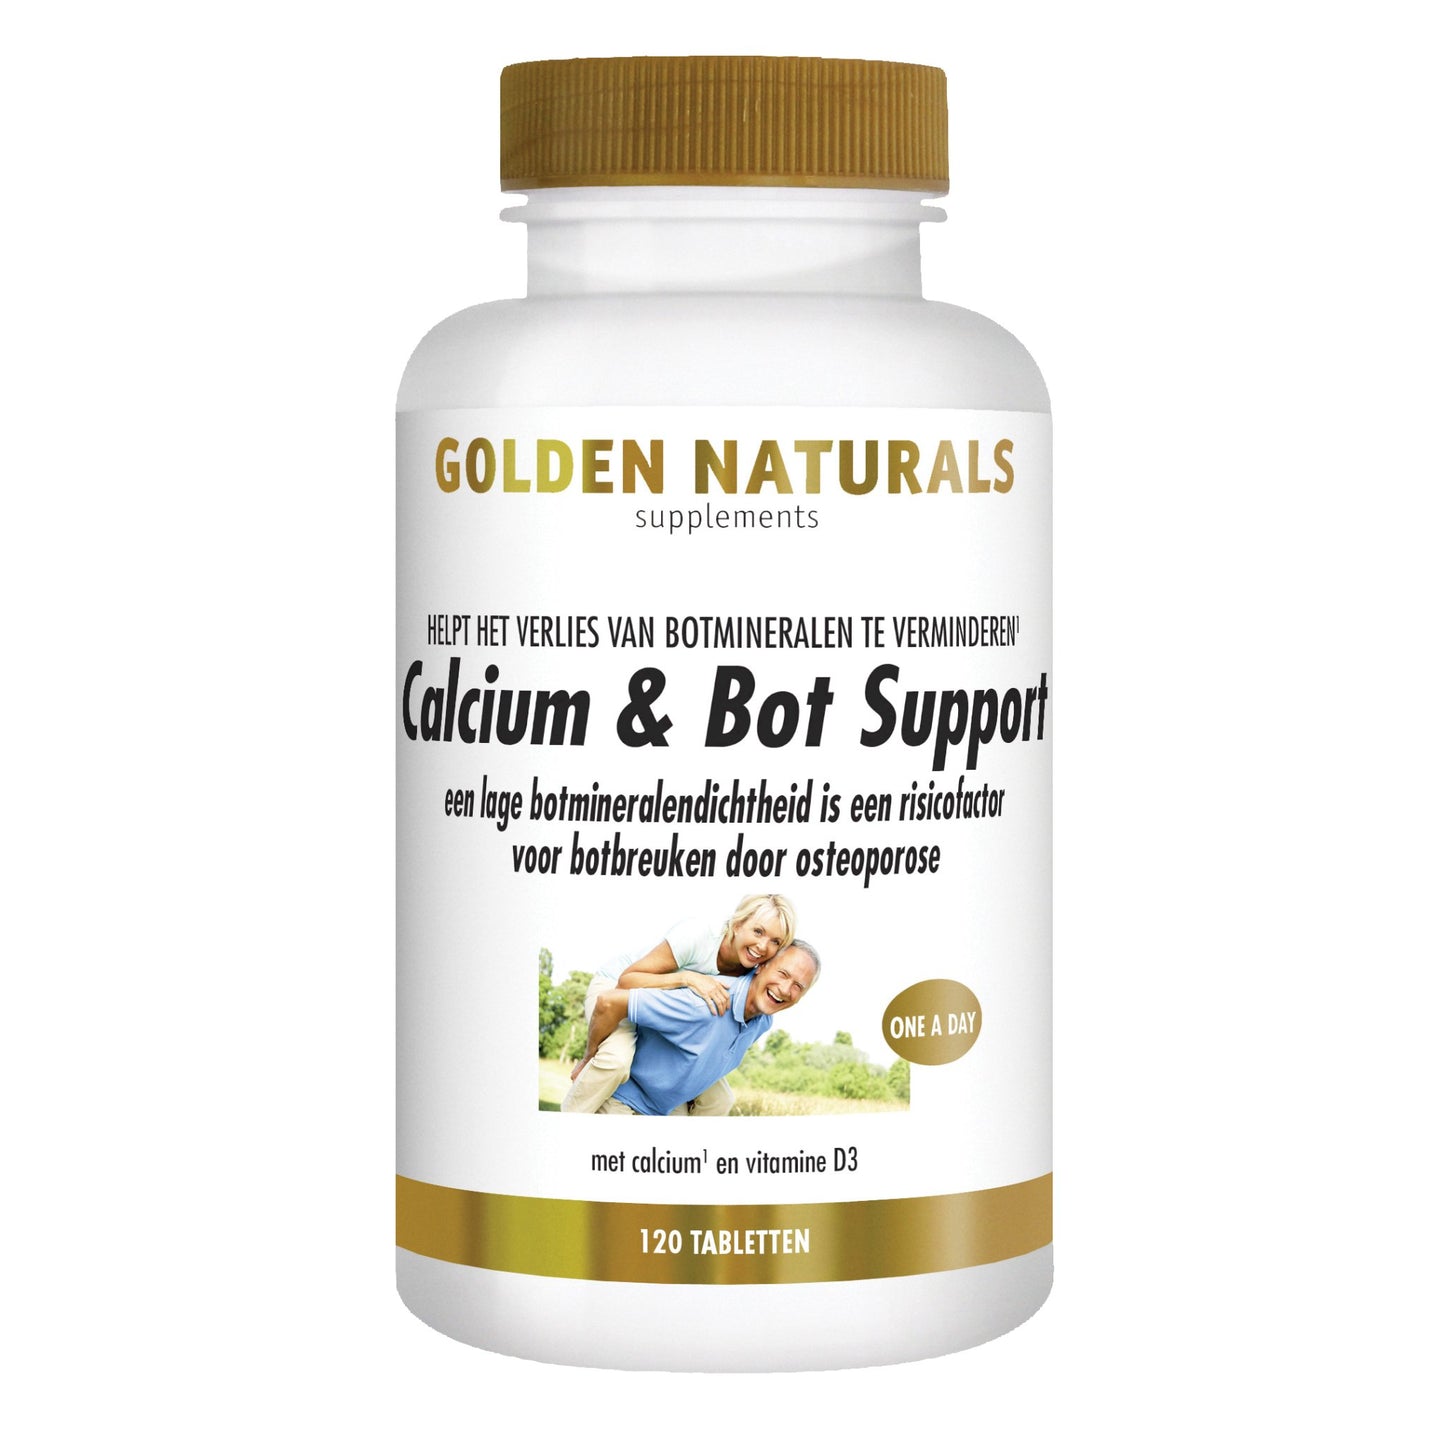 Calcium & Bot Support - 120 - vegetarische tabletten Supplement Golden Naturals   